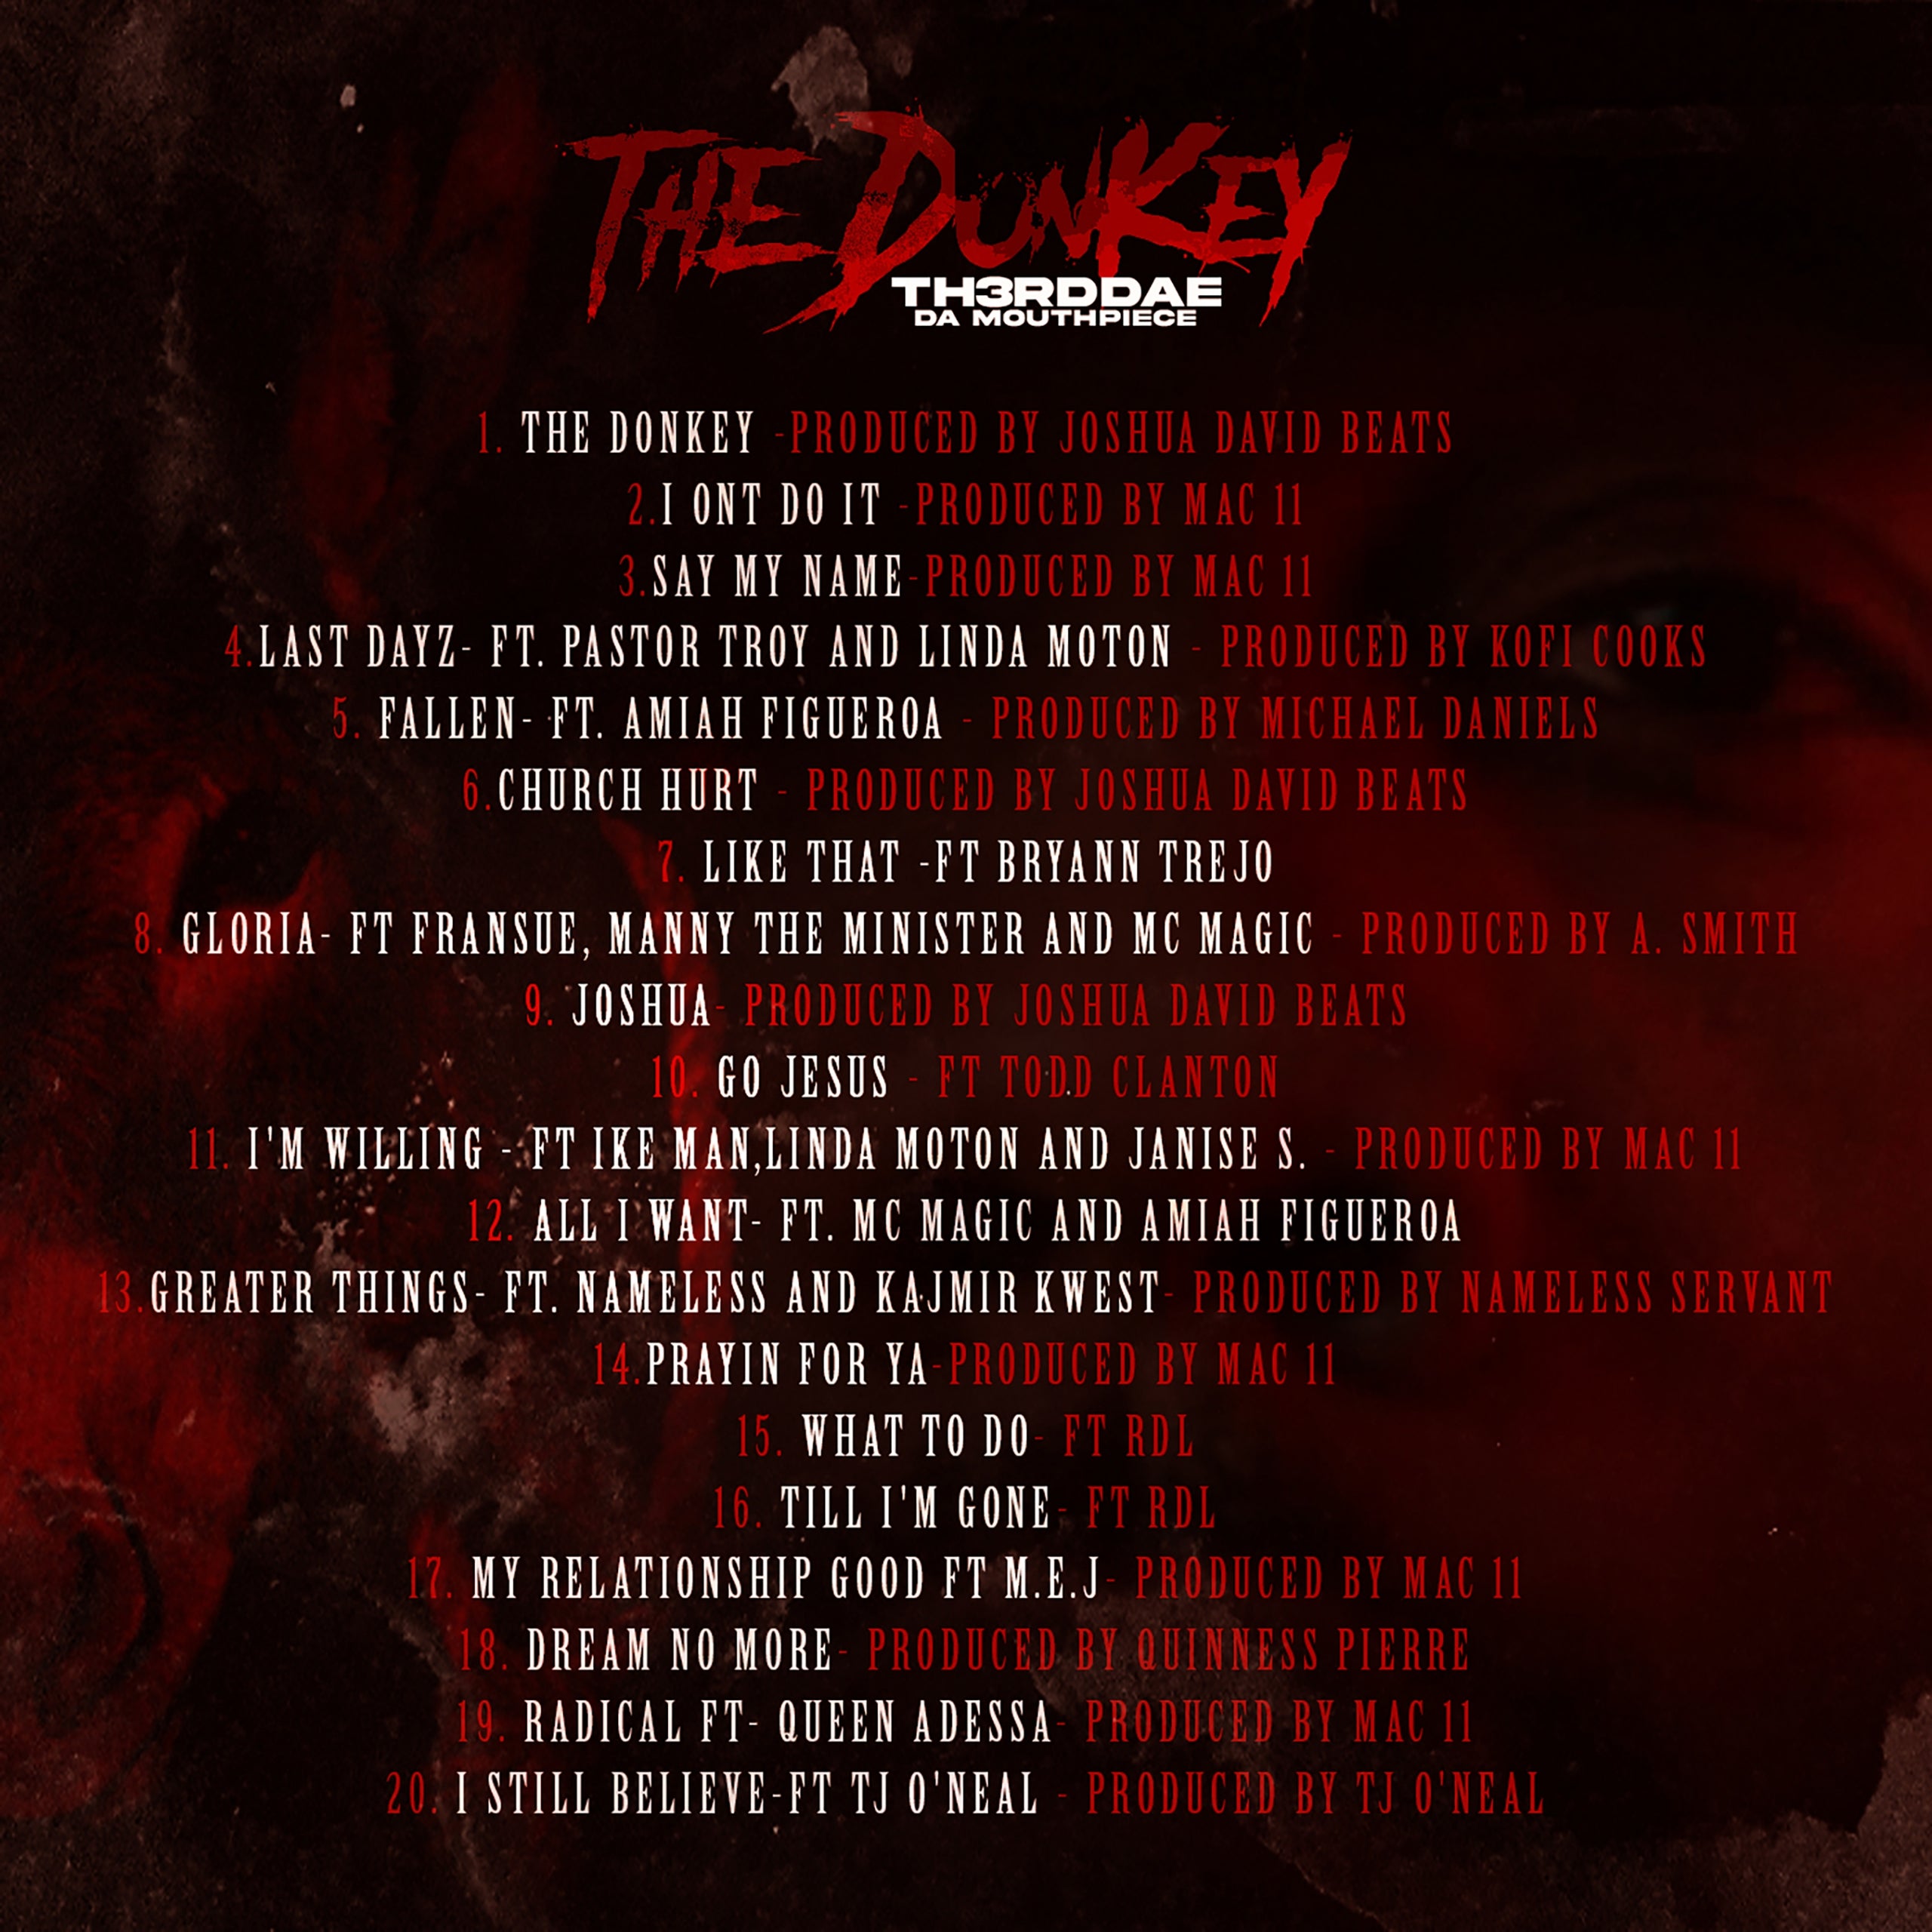 THE DONKEY ALBUM